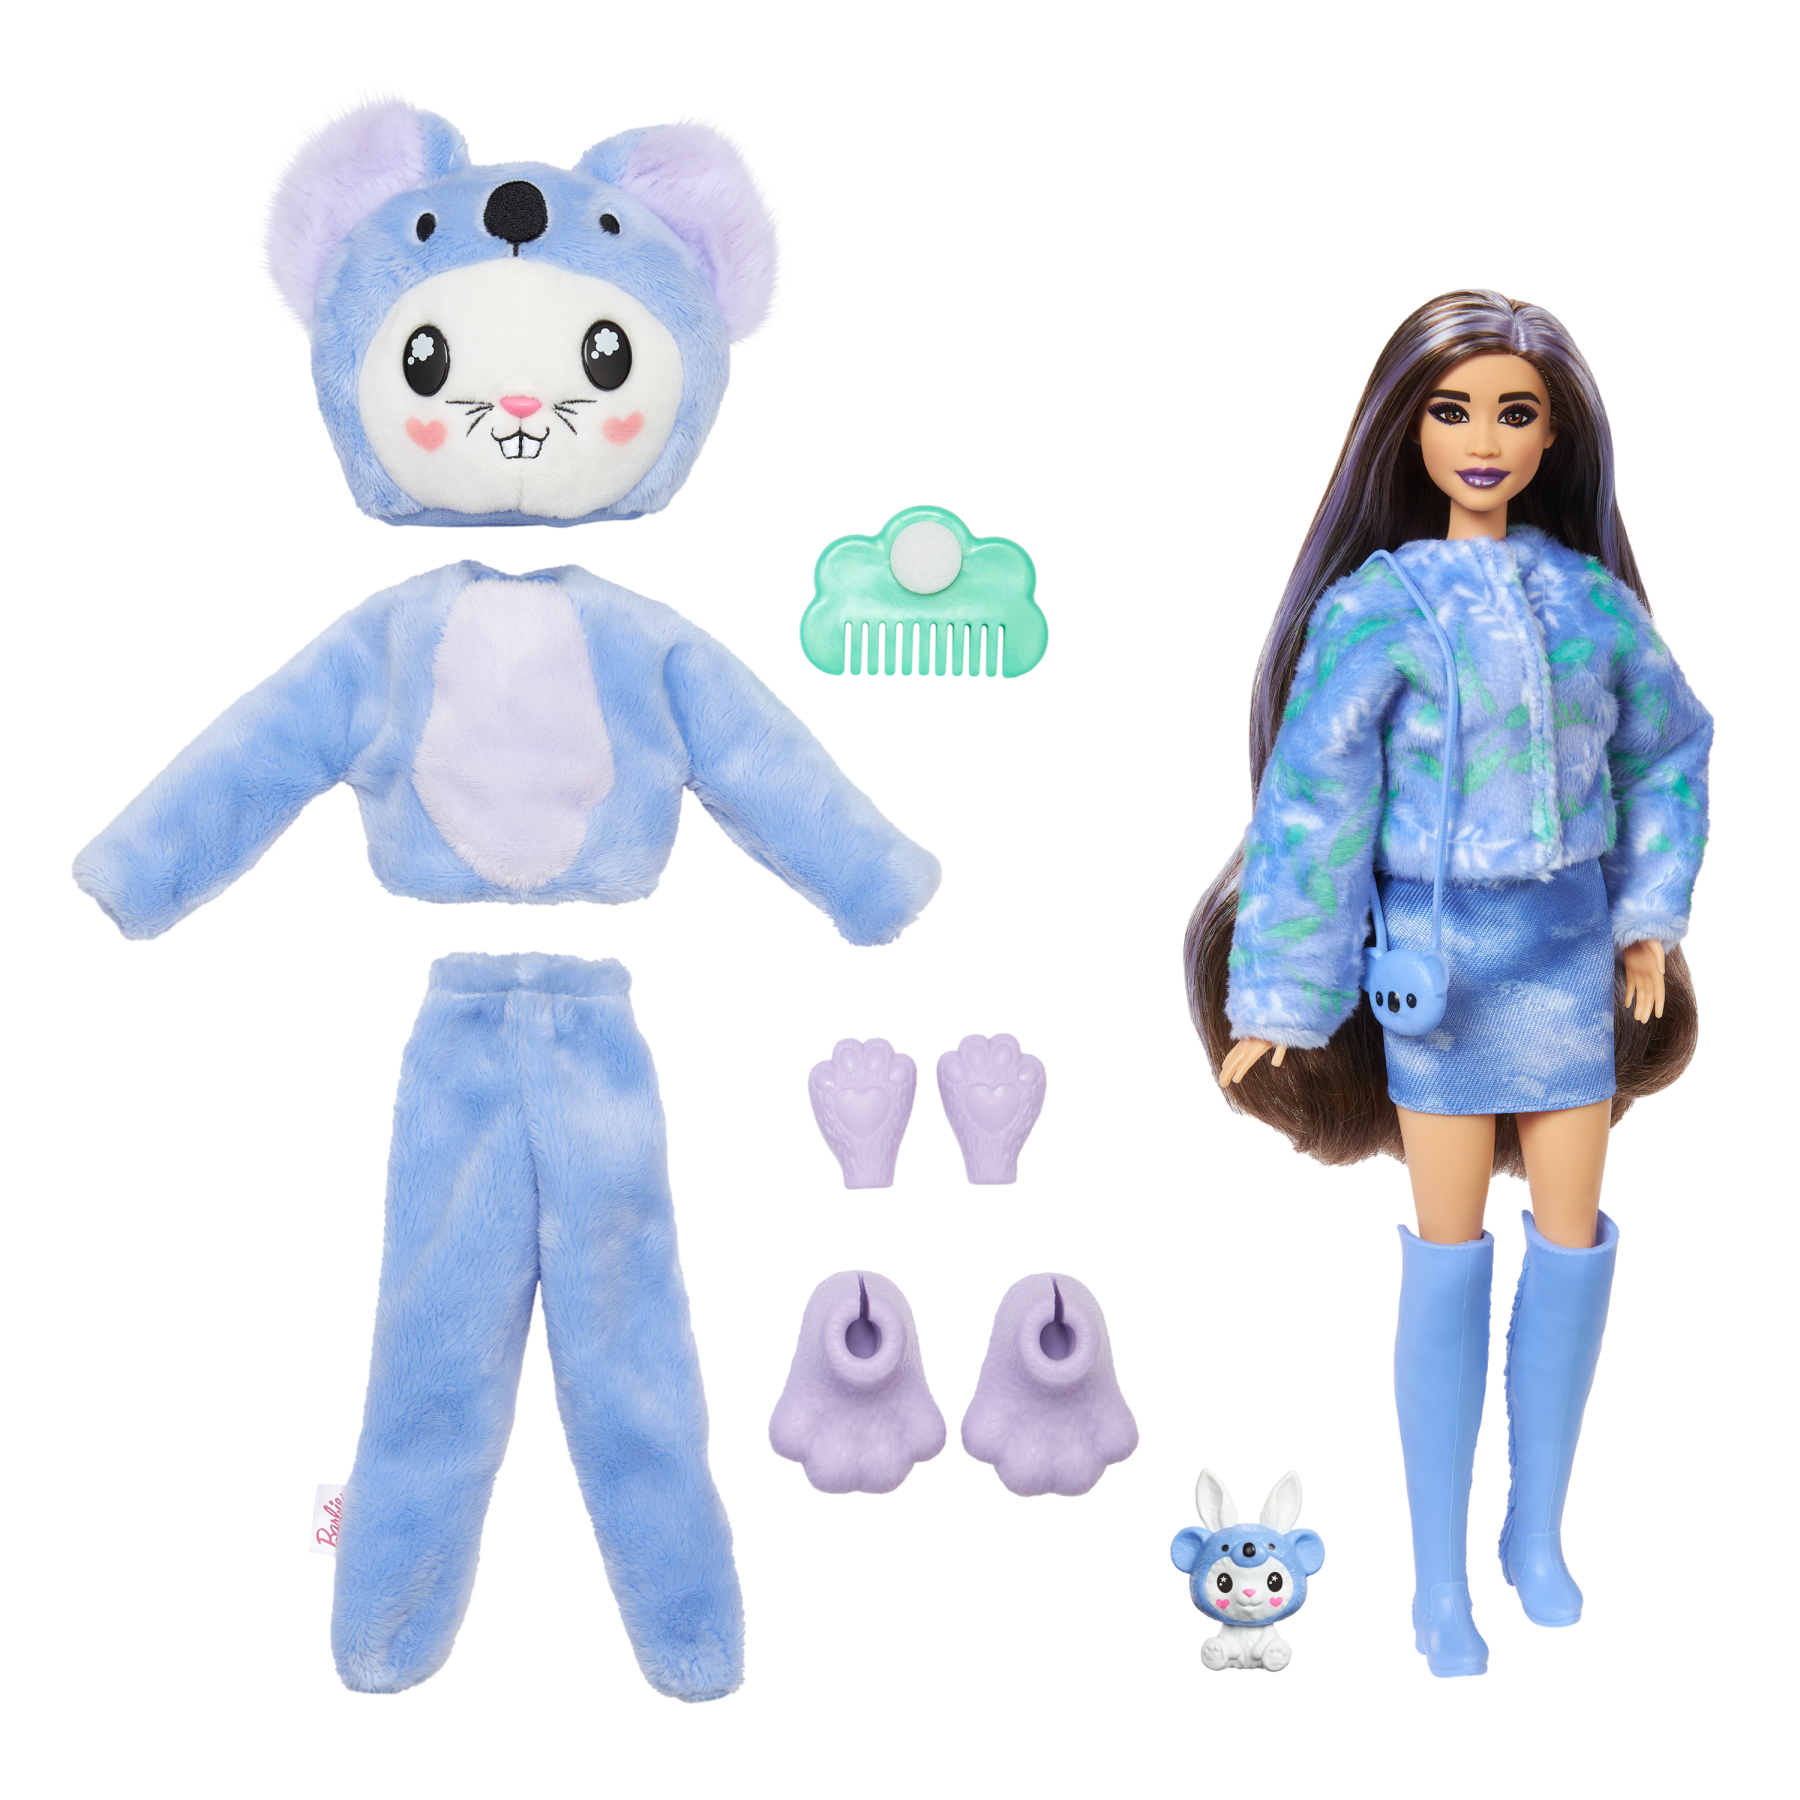 Barbie cutie reveal - bambola con costume di peluche da coniglietto-koala e 10 accessori a sorpresa cambia colore, serie amici cuccioli - Barbie